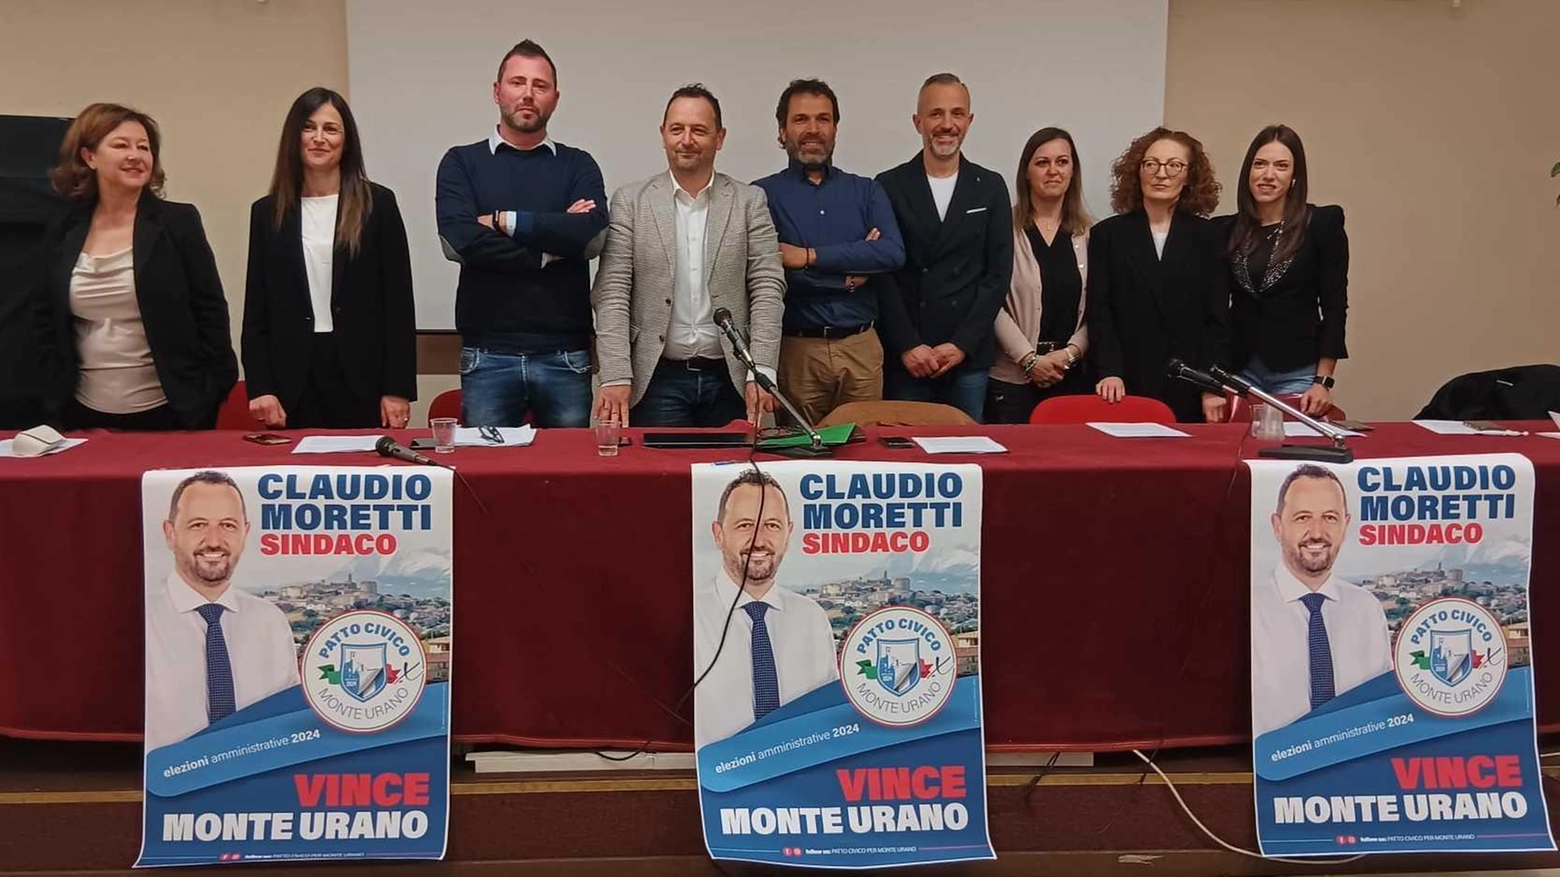 Moretti è il candidato sindaco: "Mi hanno definito di sinistra e altri di destra, io sono Claudio e faccio l’avvocato"